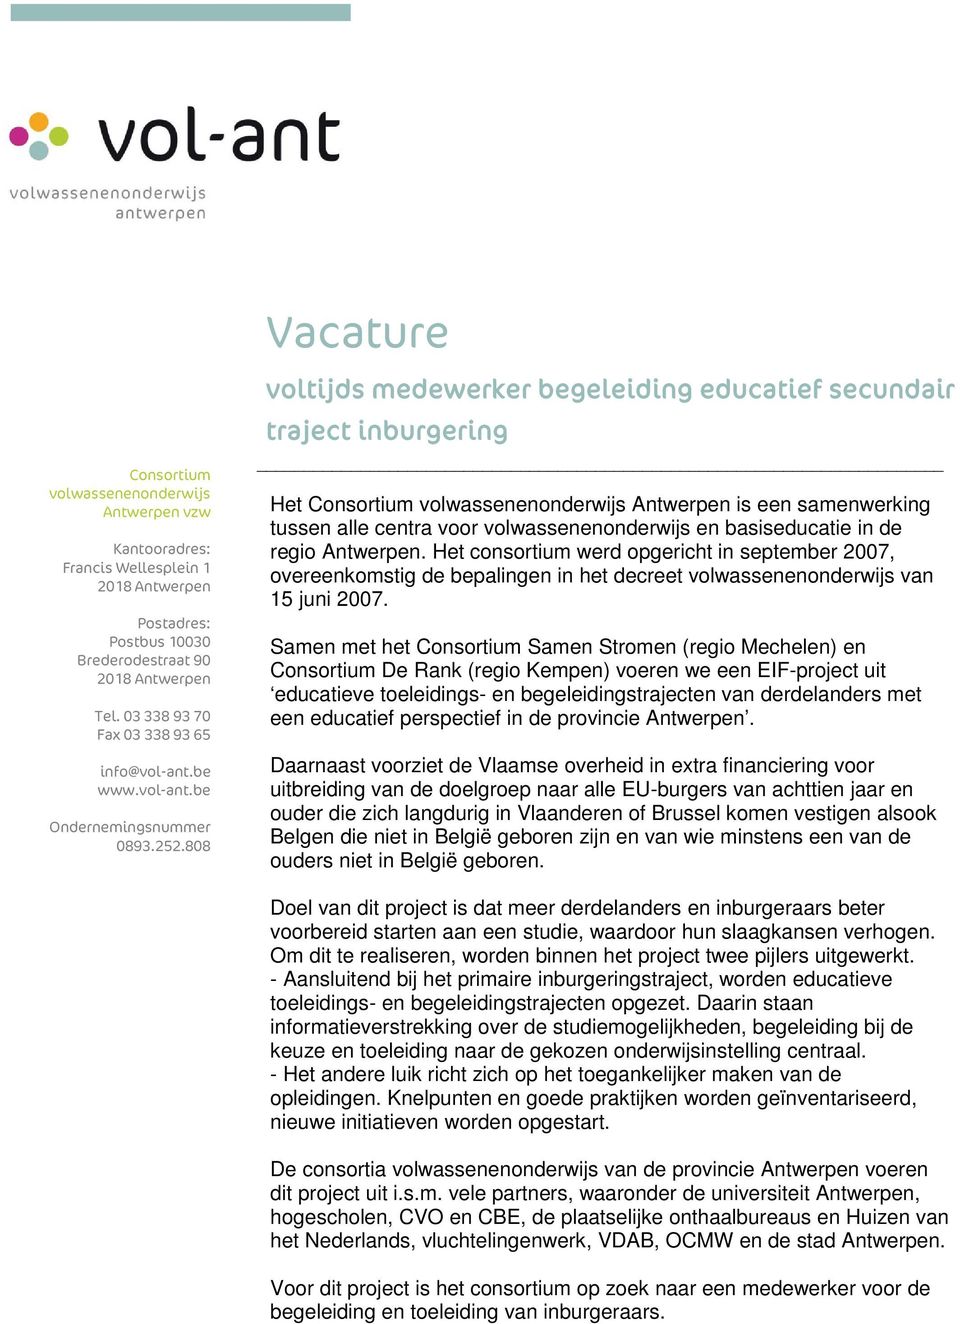 808 voltijds medewerker begeleiding educatief secundair traject inburgering Het Consortium volwassenenonderwijs Antwerpen is een samenwerking tussen alle centra voor volwassenenonderwijs en